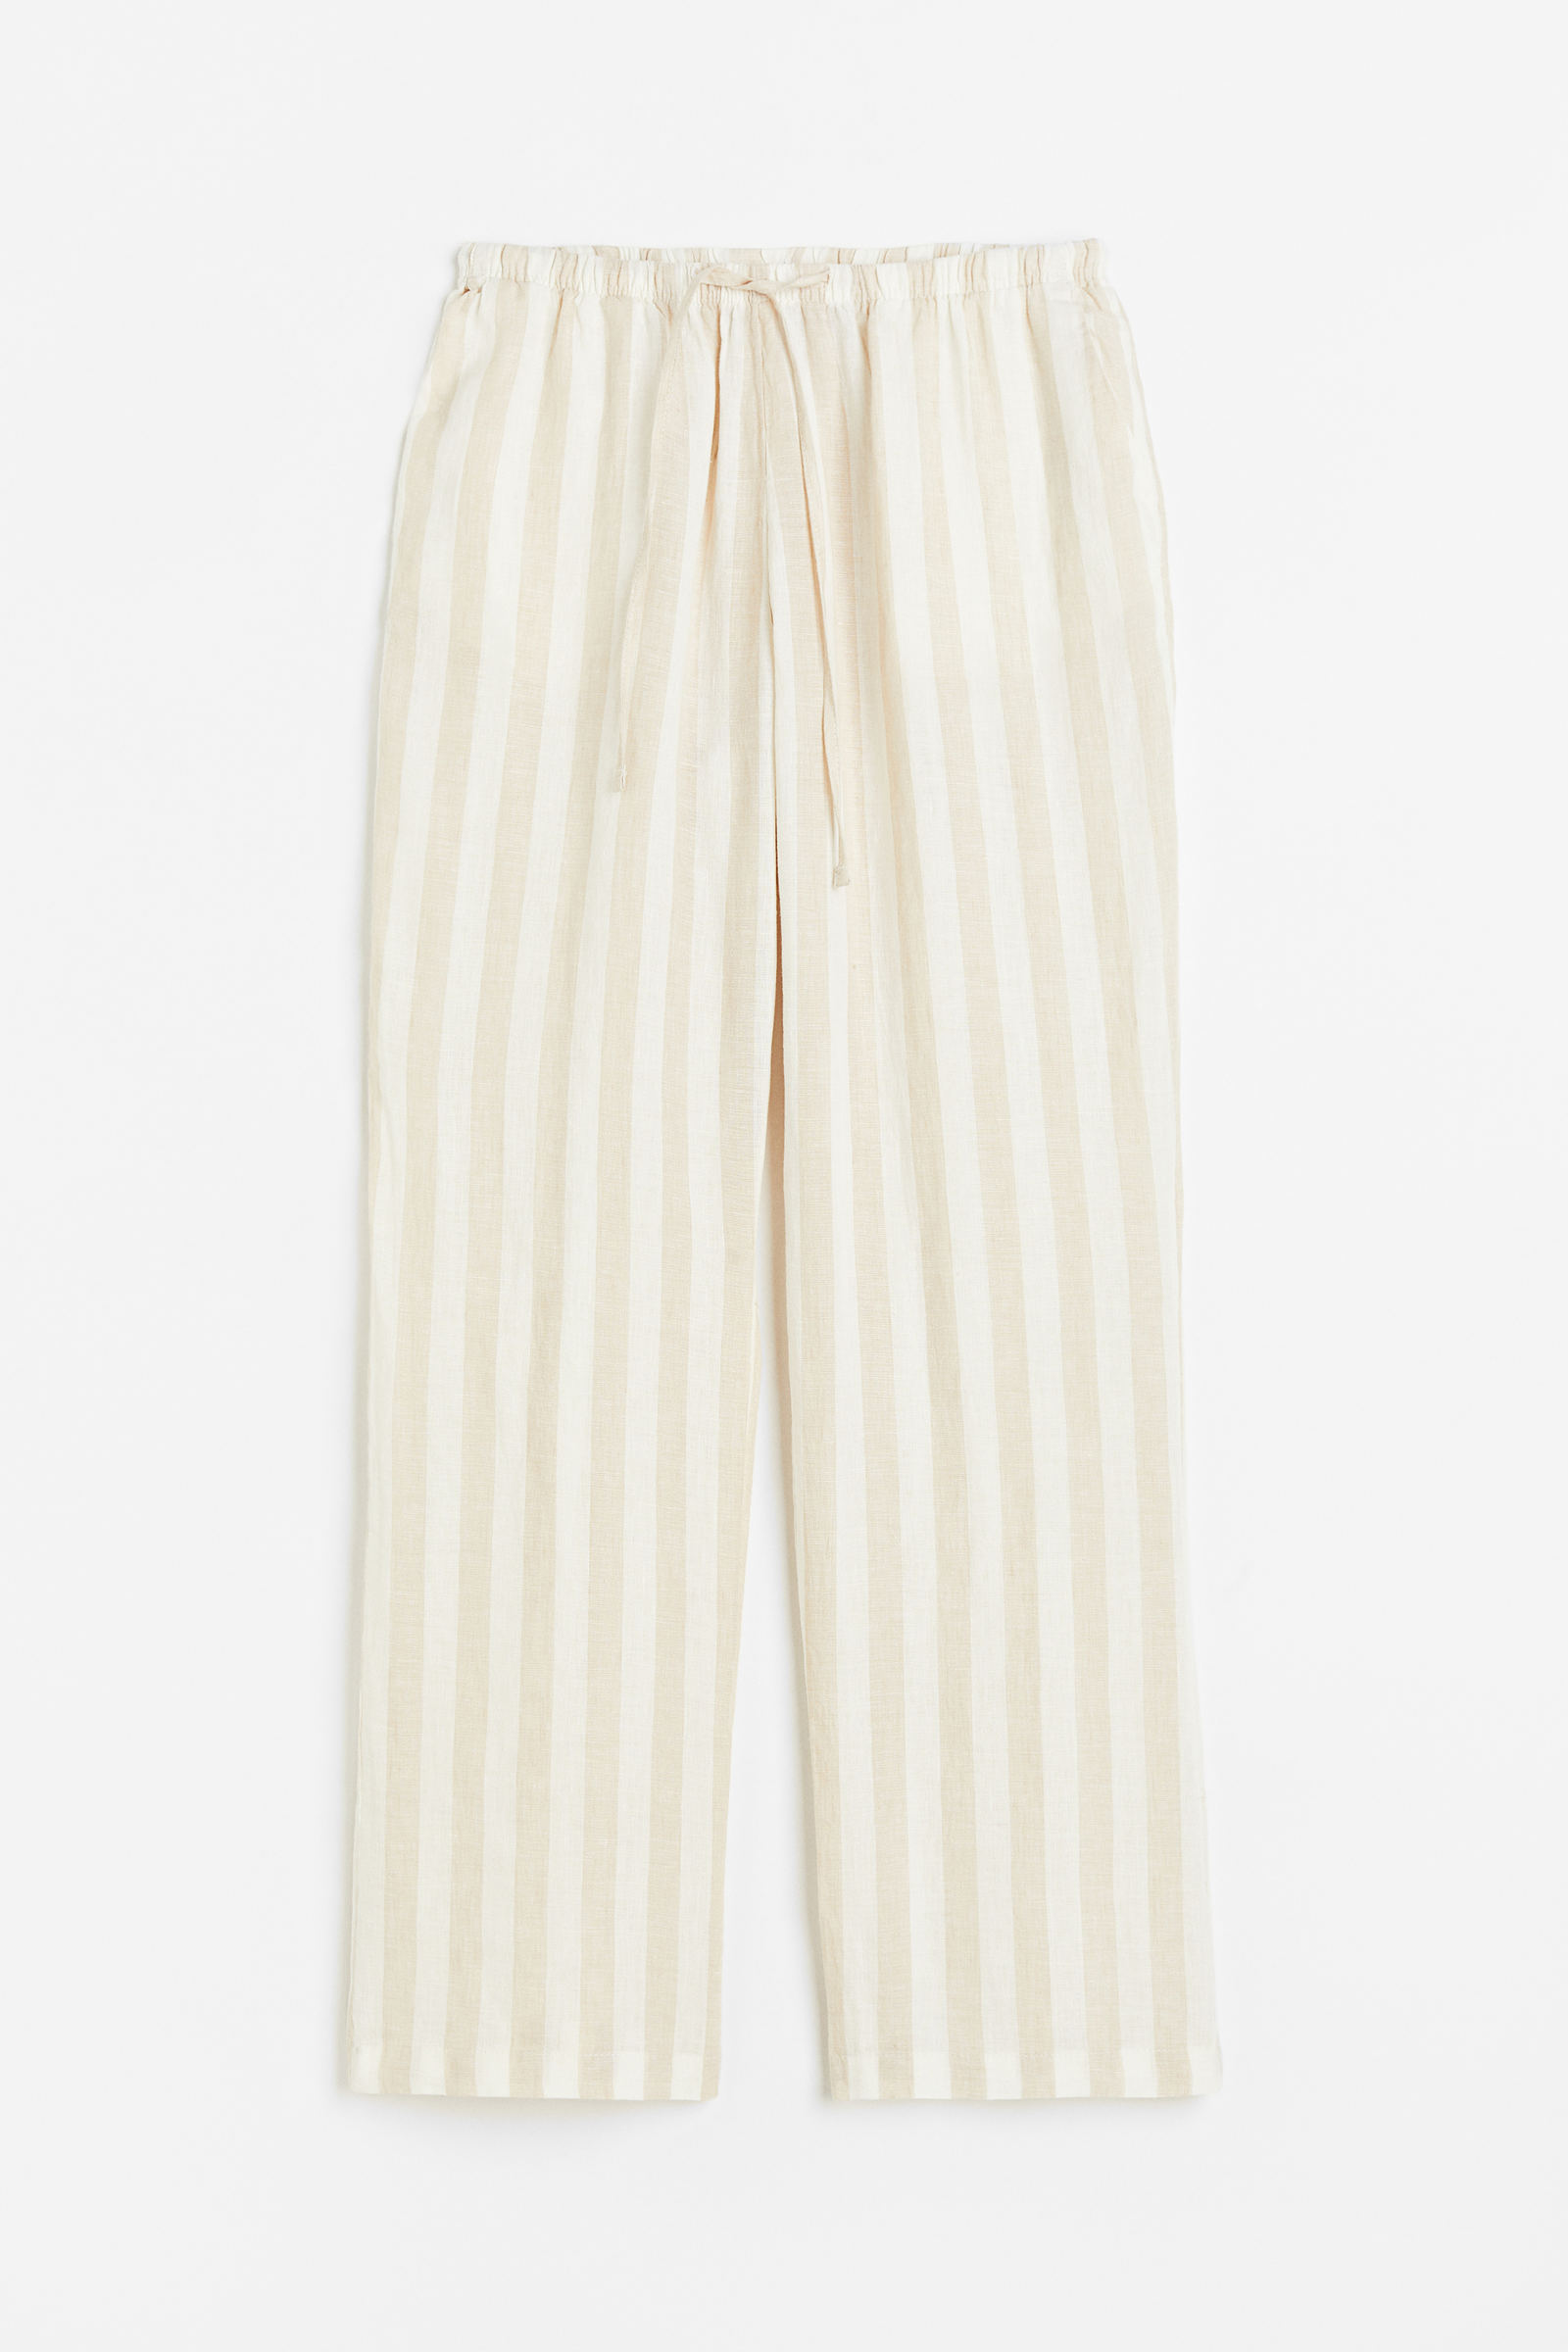 Pantalones de lino de verano para mujer, pantalones anchos de